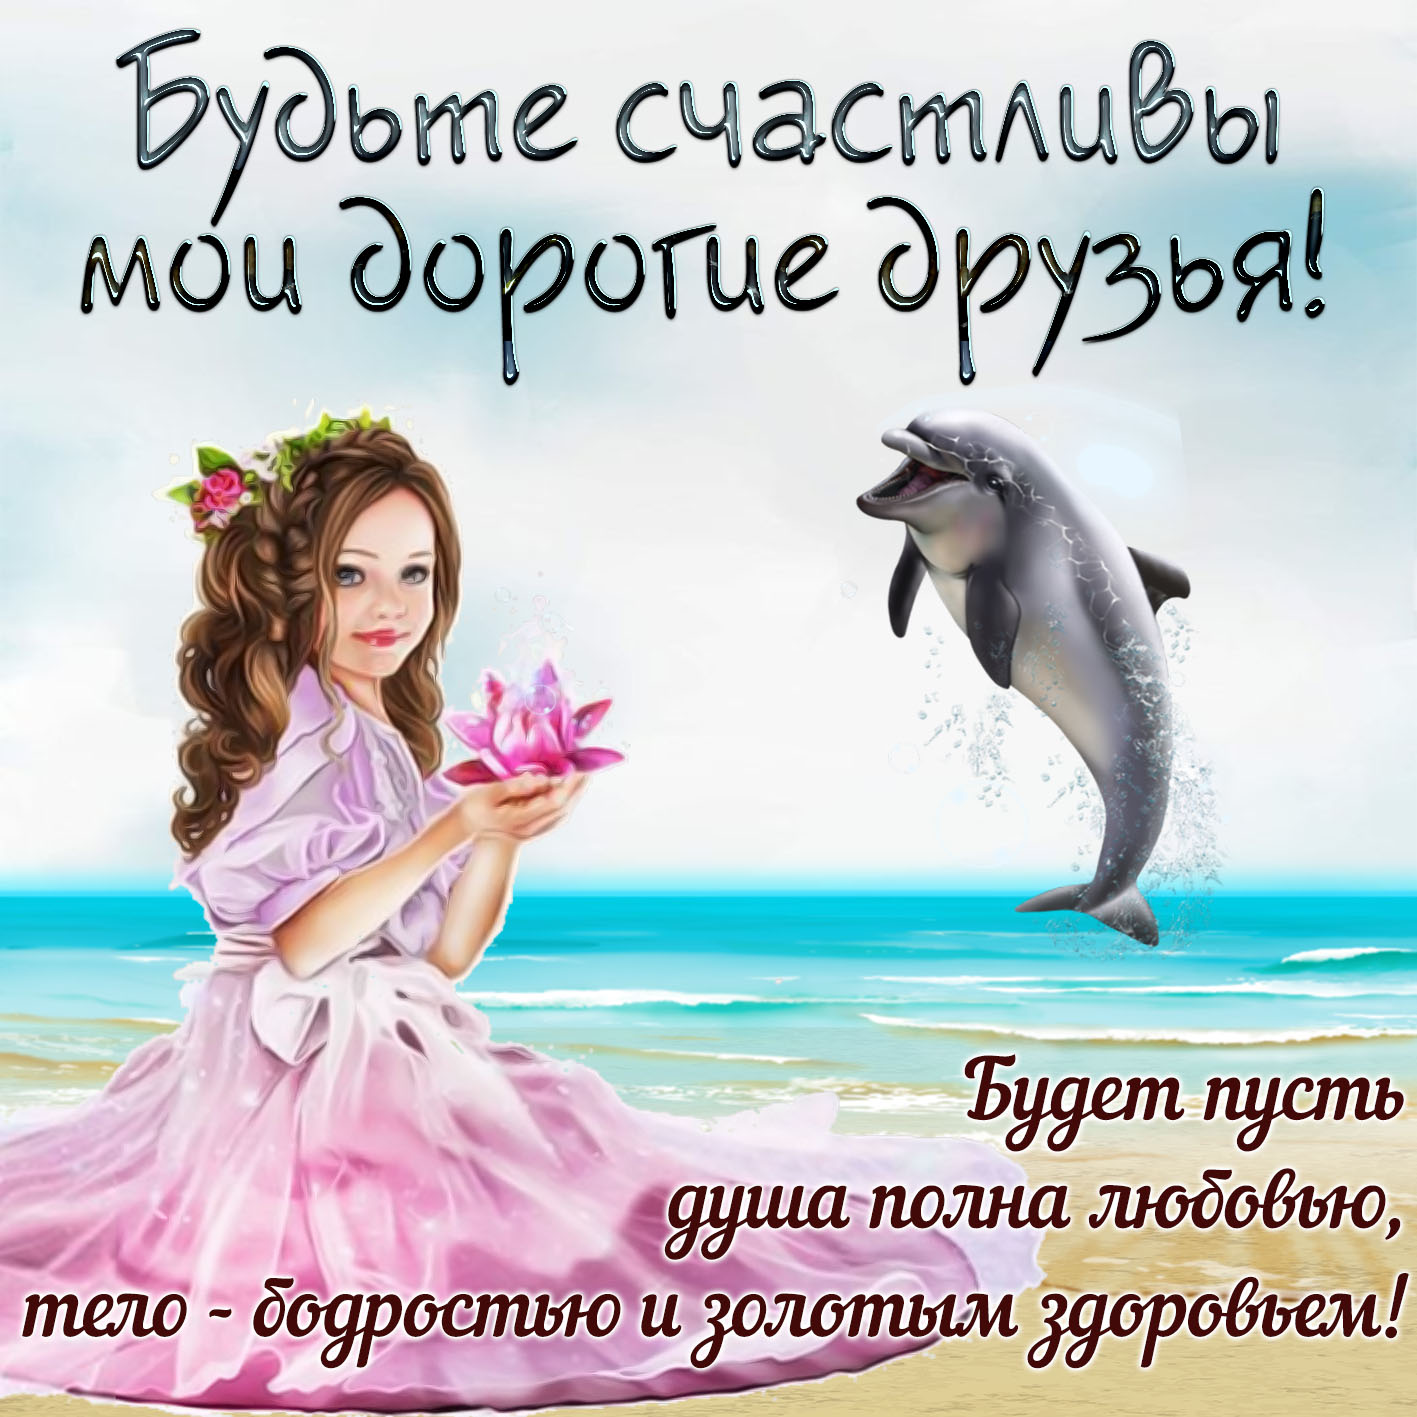 С др открытка с дельфином